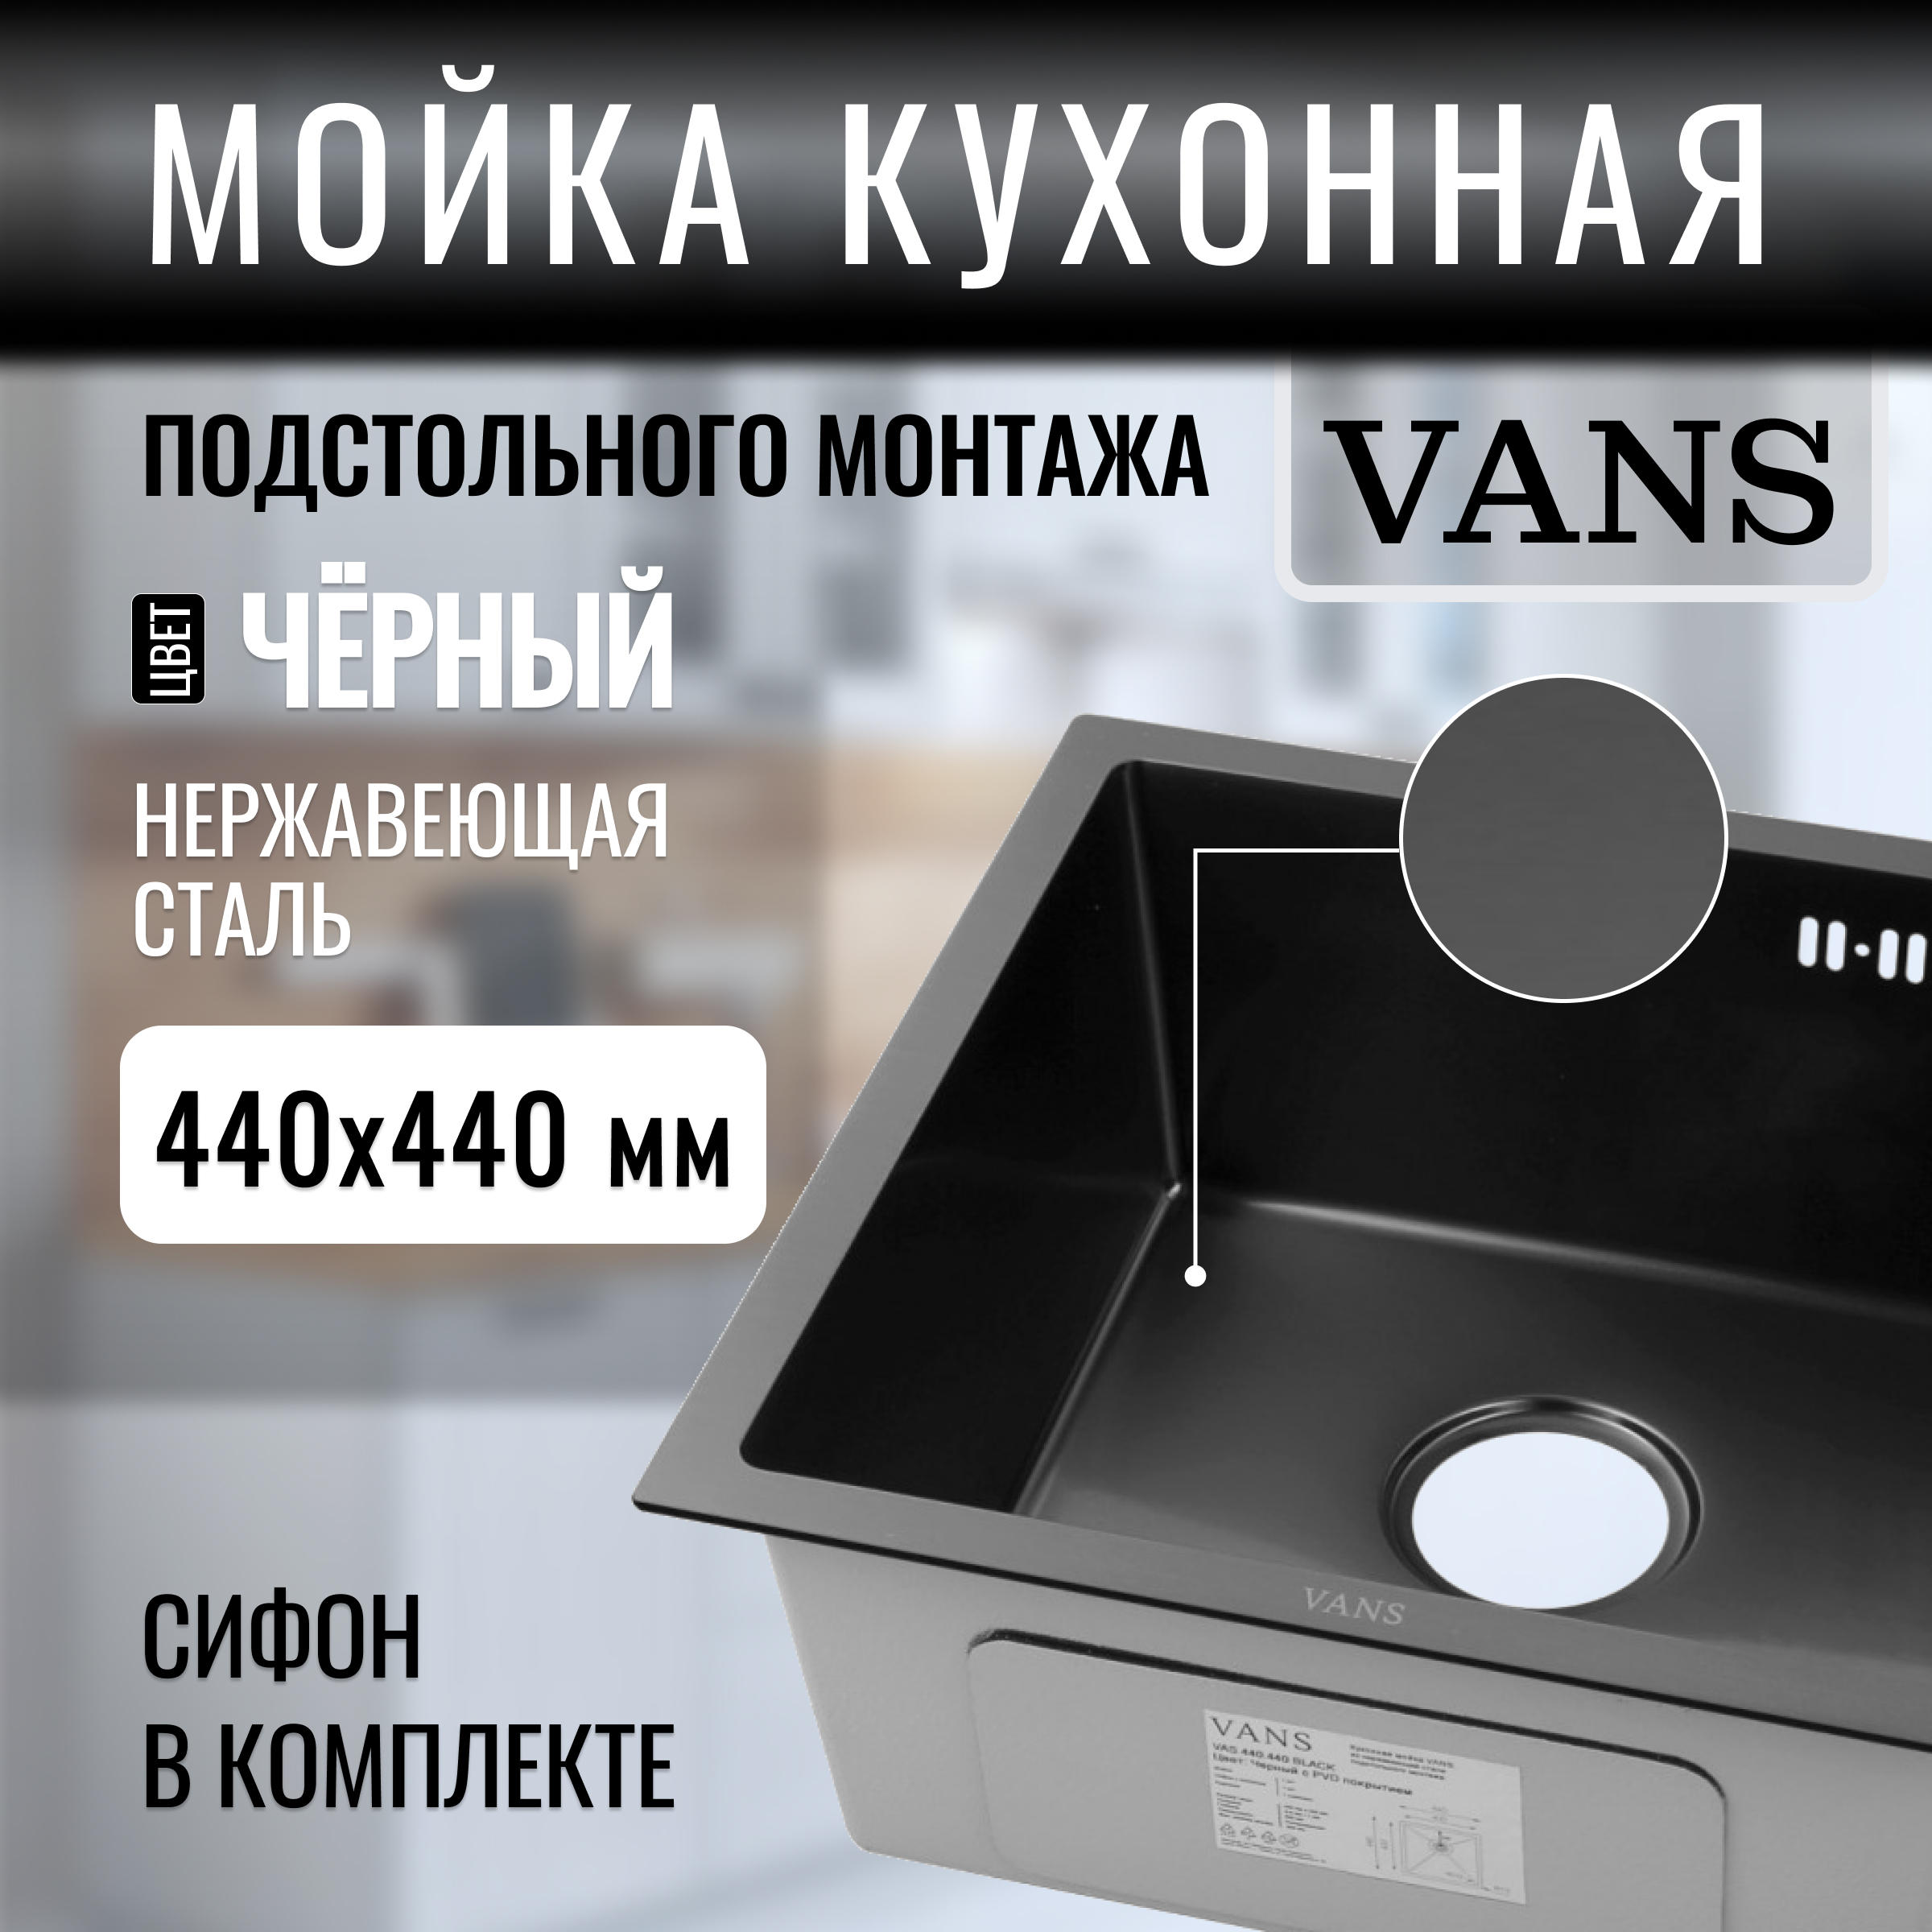 Кухонная мойка подстольный монтаж VANS 440*440*200 мм Black